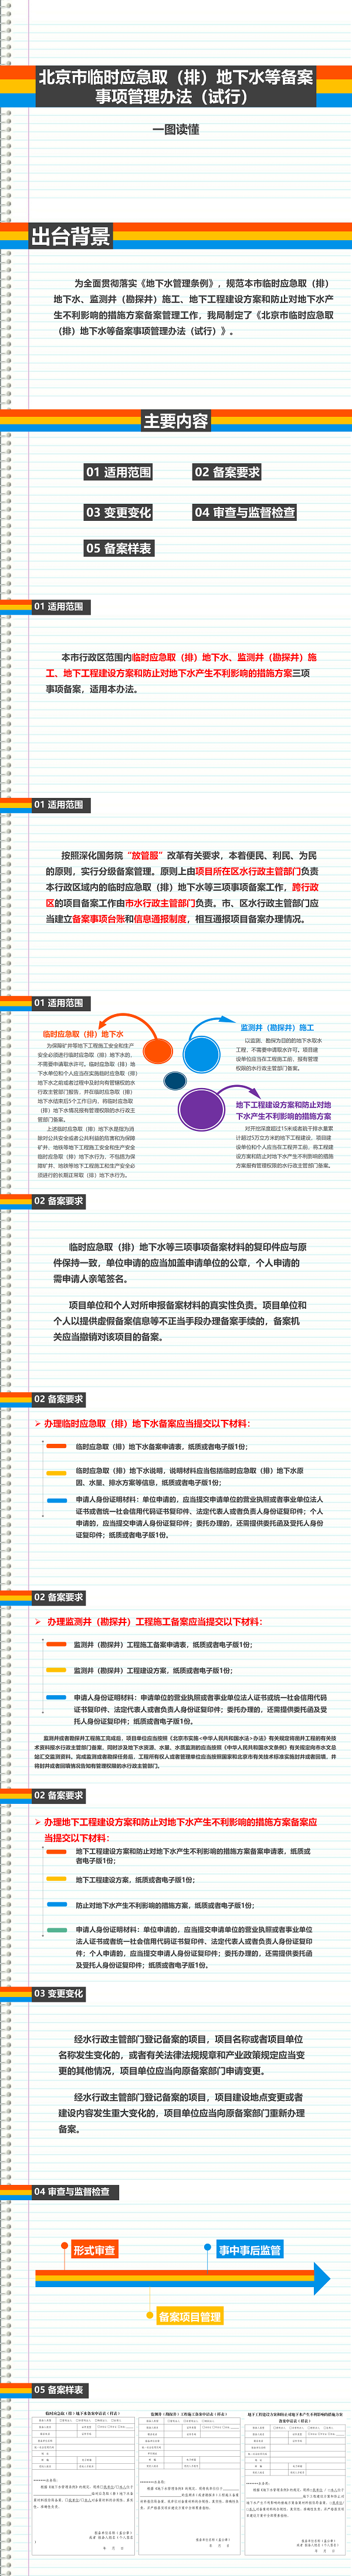 北京市临时应急取（排）地下水等备案事项管理办法（试行）(1)_01.png